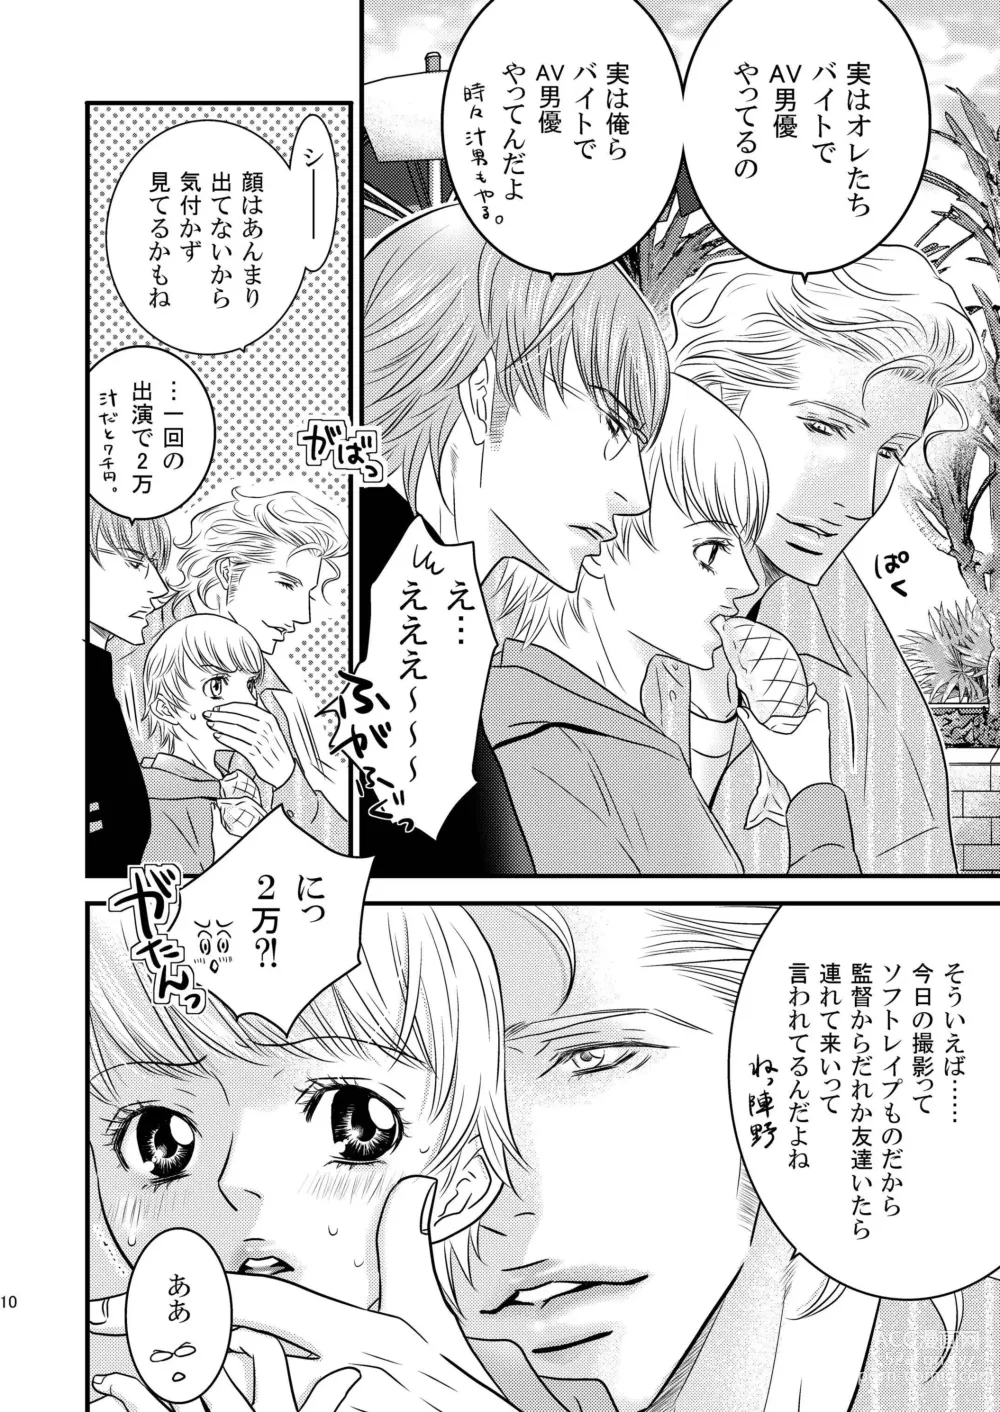 Page 10 of doujinshi Sparkling ORANGE!